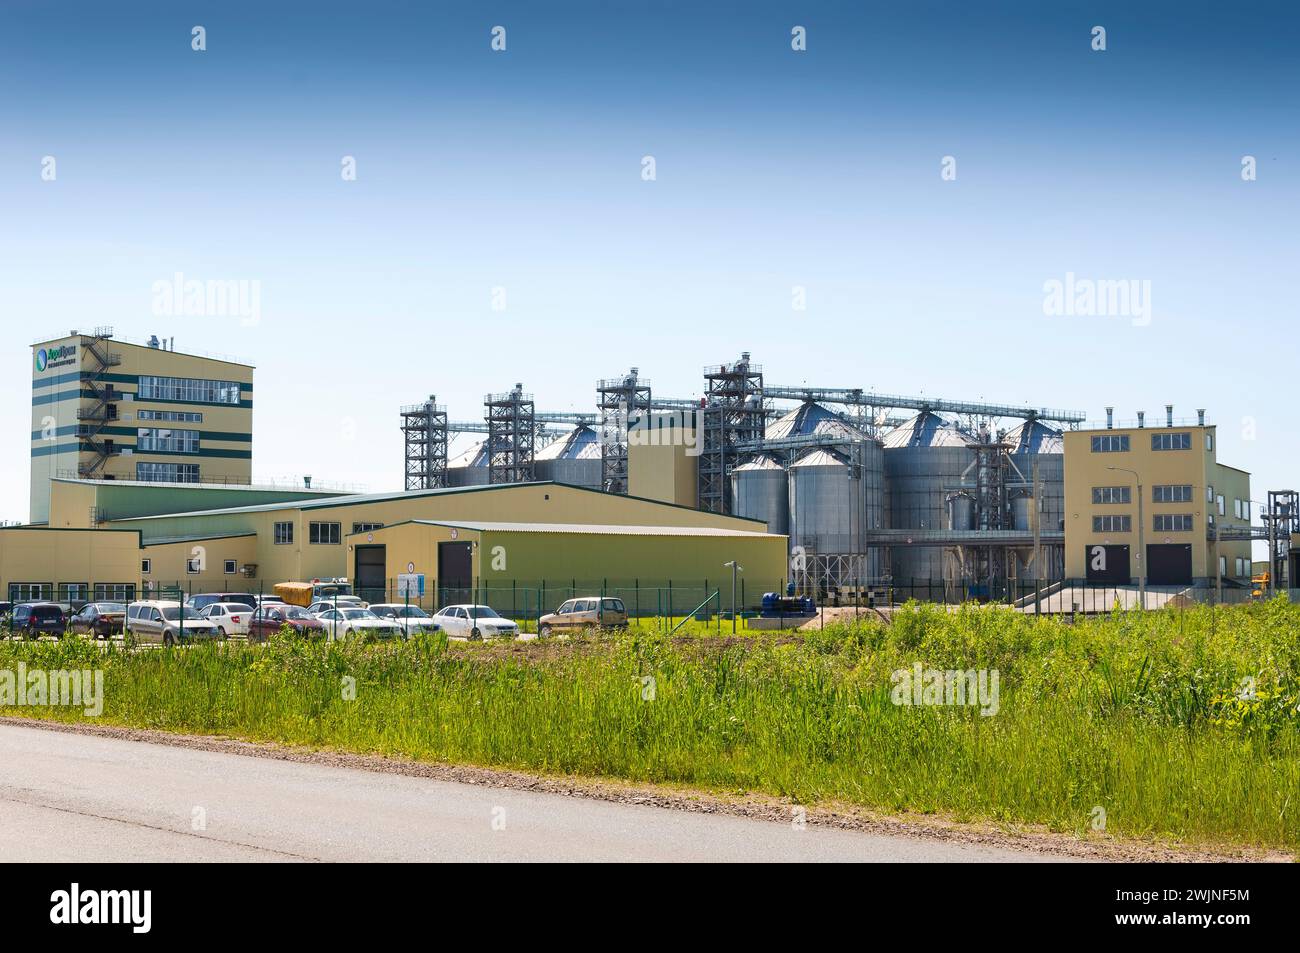 Russland. Region Tver. 19. Juni 2021 große silberne Tanks des Aufzugs im Agrar-Industriekomplex. Stockfoto